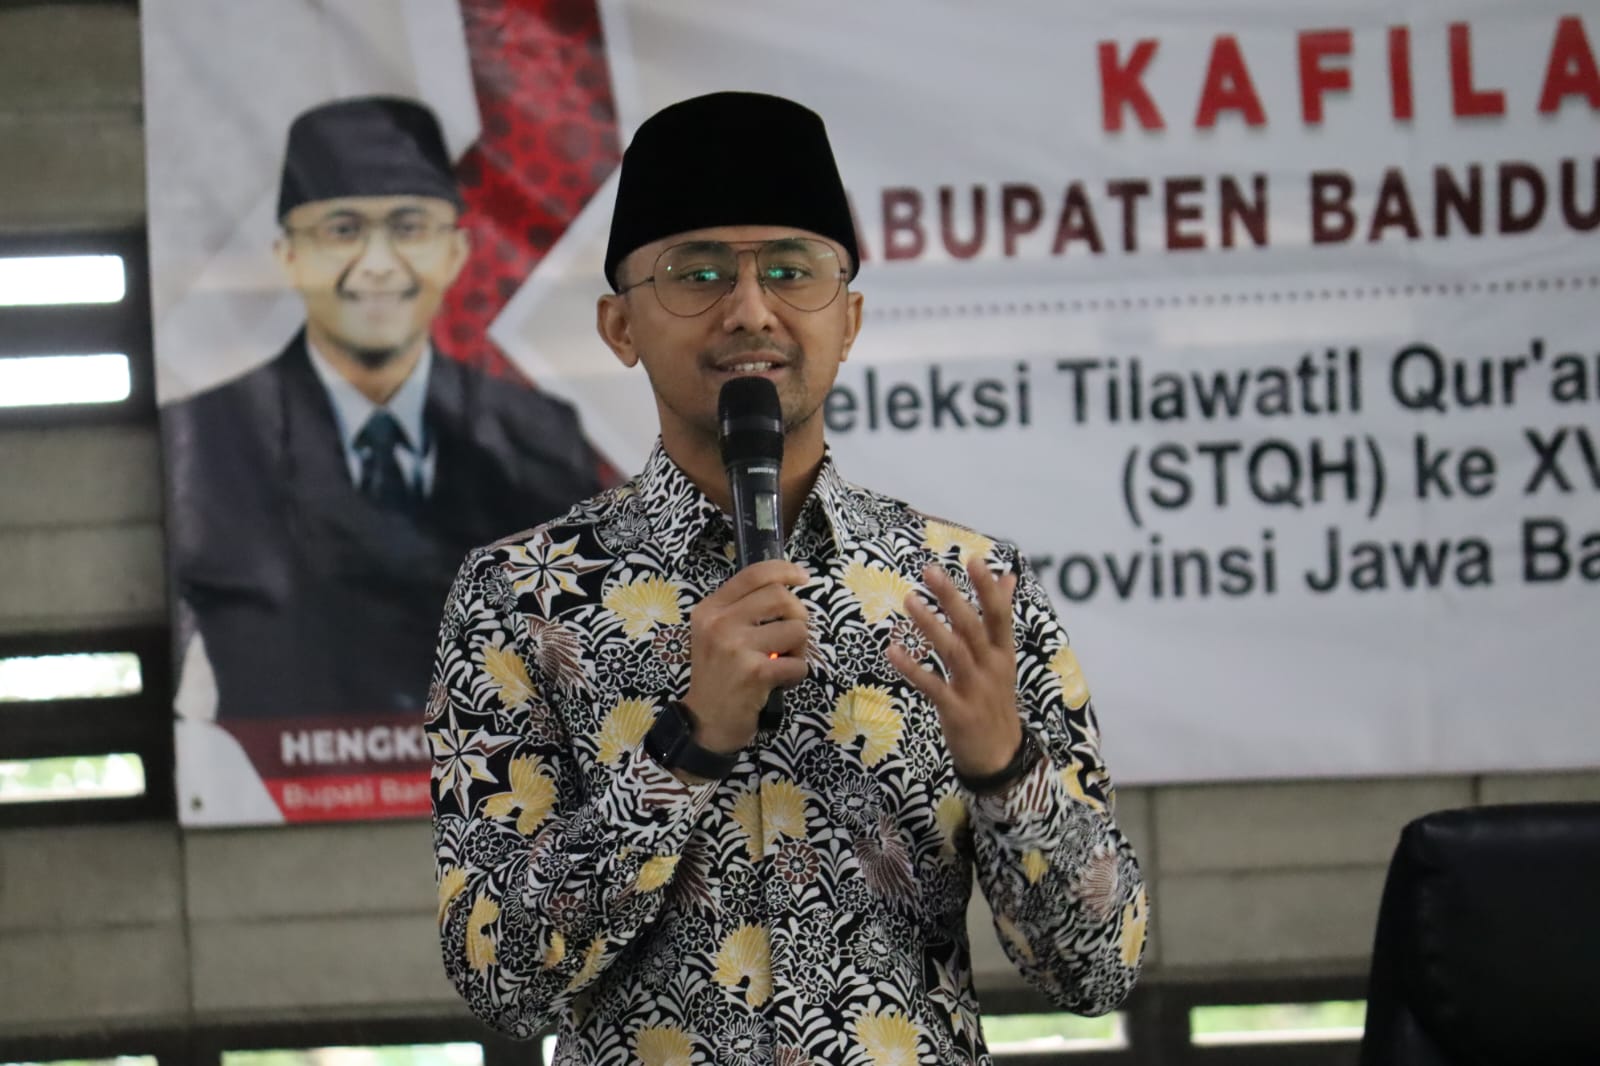 Pelepasan Kafilah Kabupaten Bandung Barat Seleksi Tilawatil Qur’an Dan Hadist (STQH)Ke XVIII Oleh Hengky Kurniawan